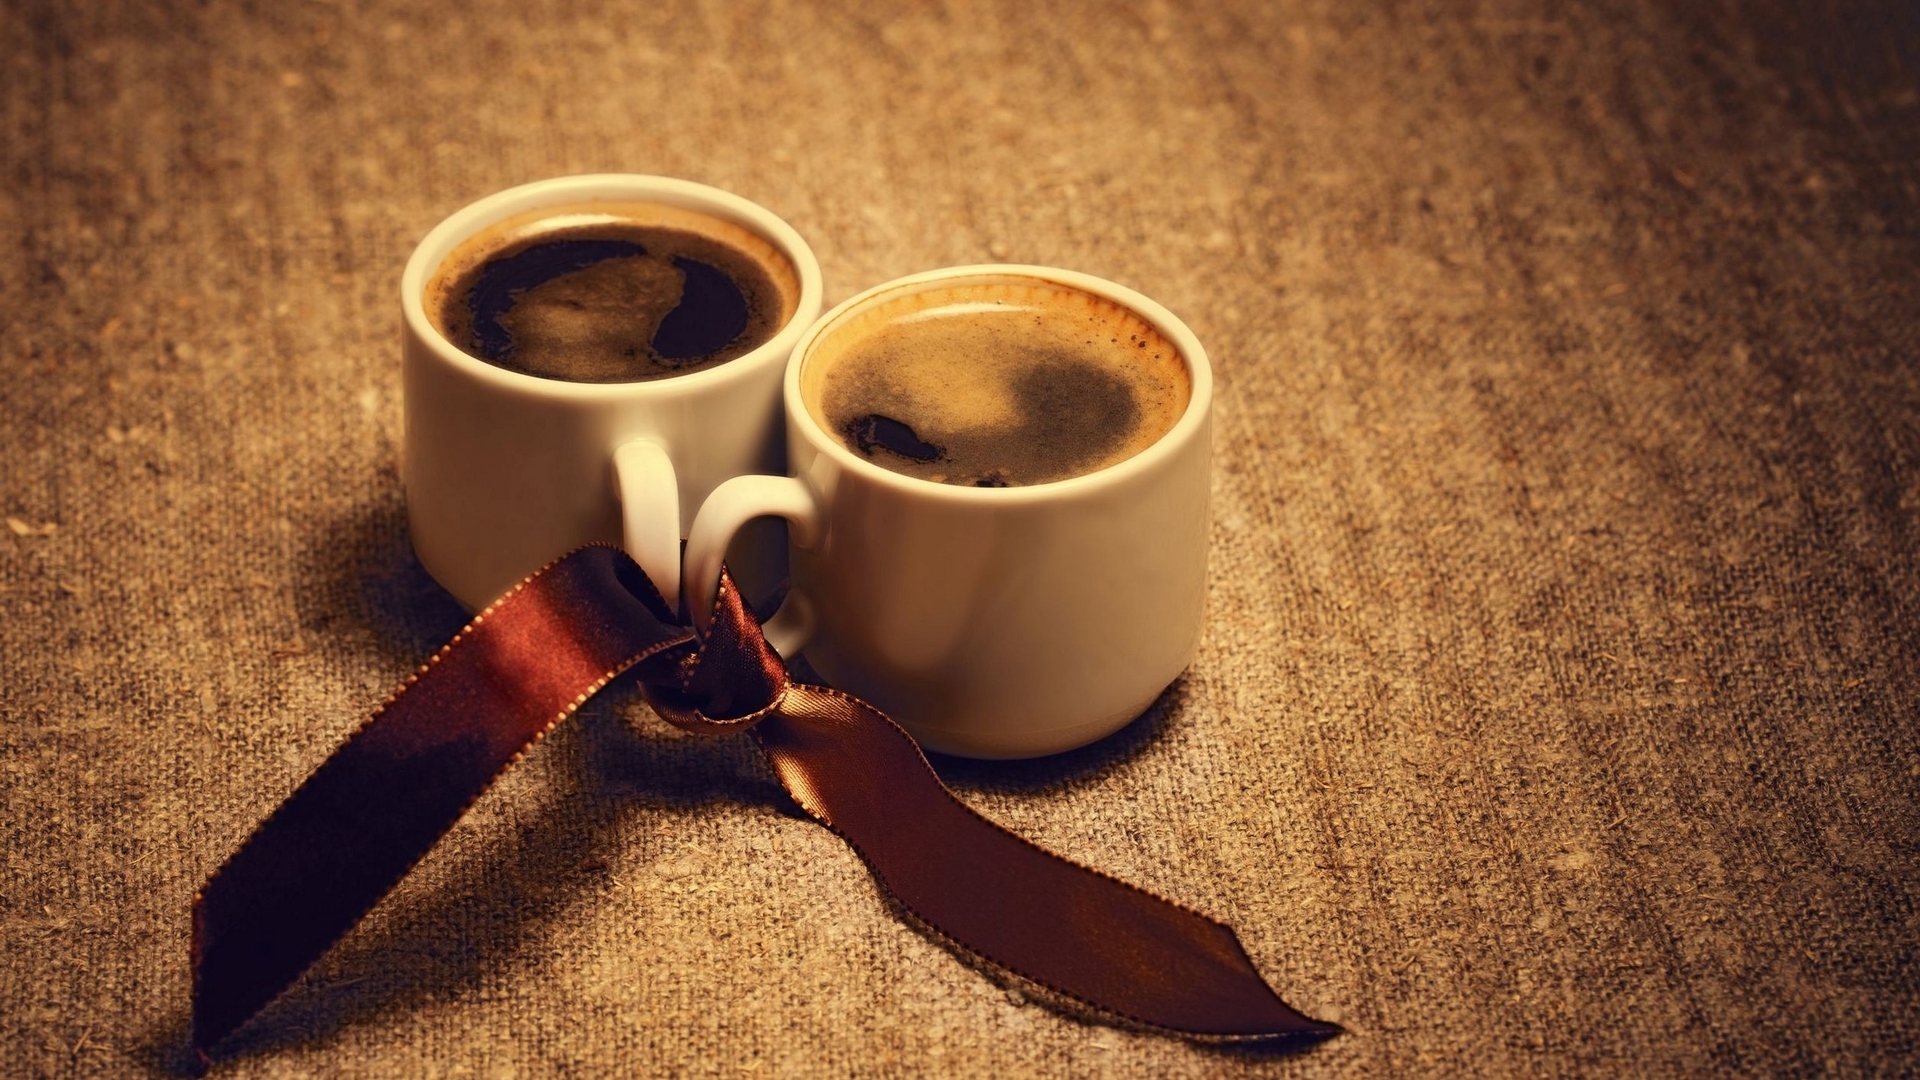 コーヒーカップの壁紙,コーヒーカップ,カップ,カフェイン,カップ,コーヒー